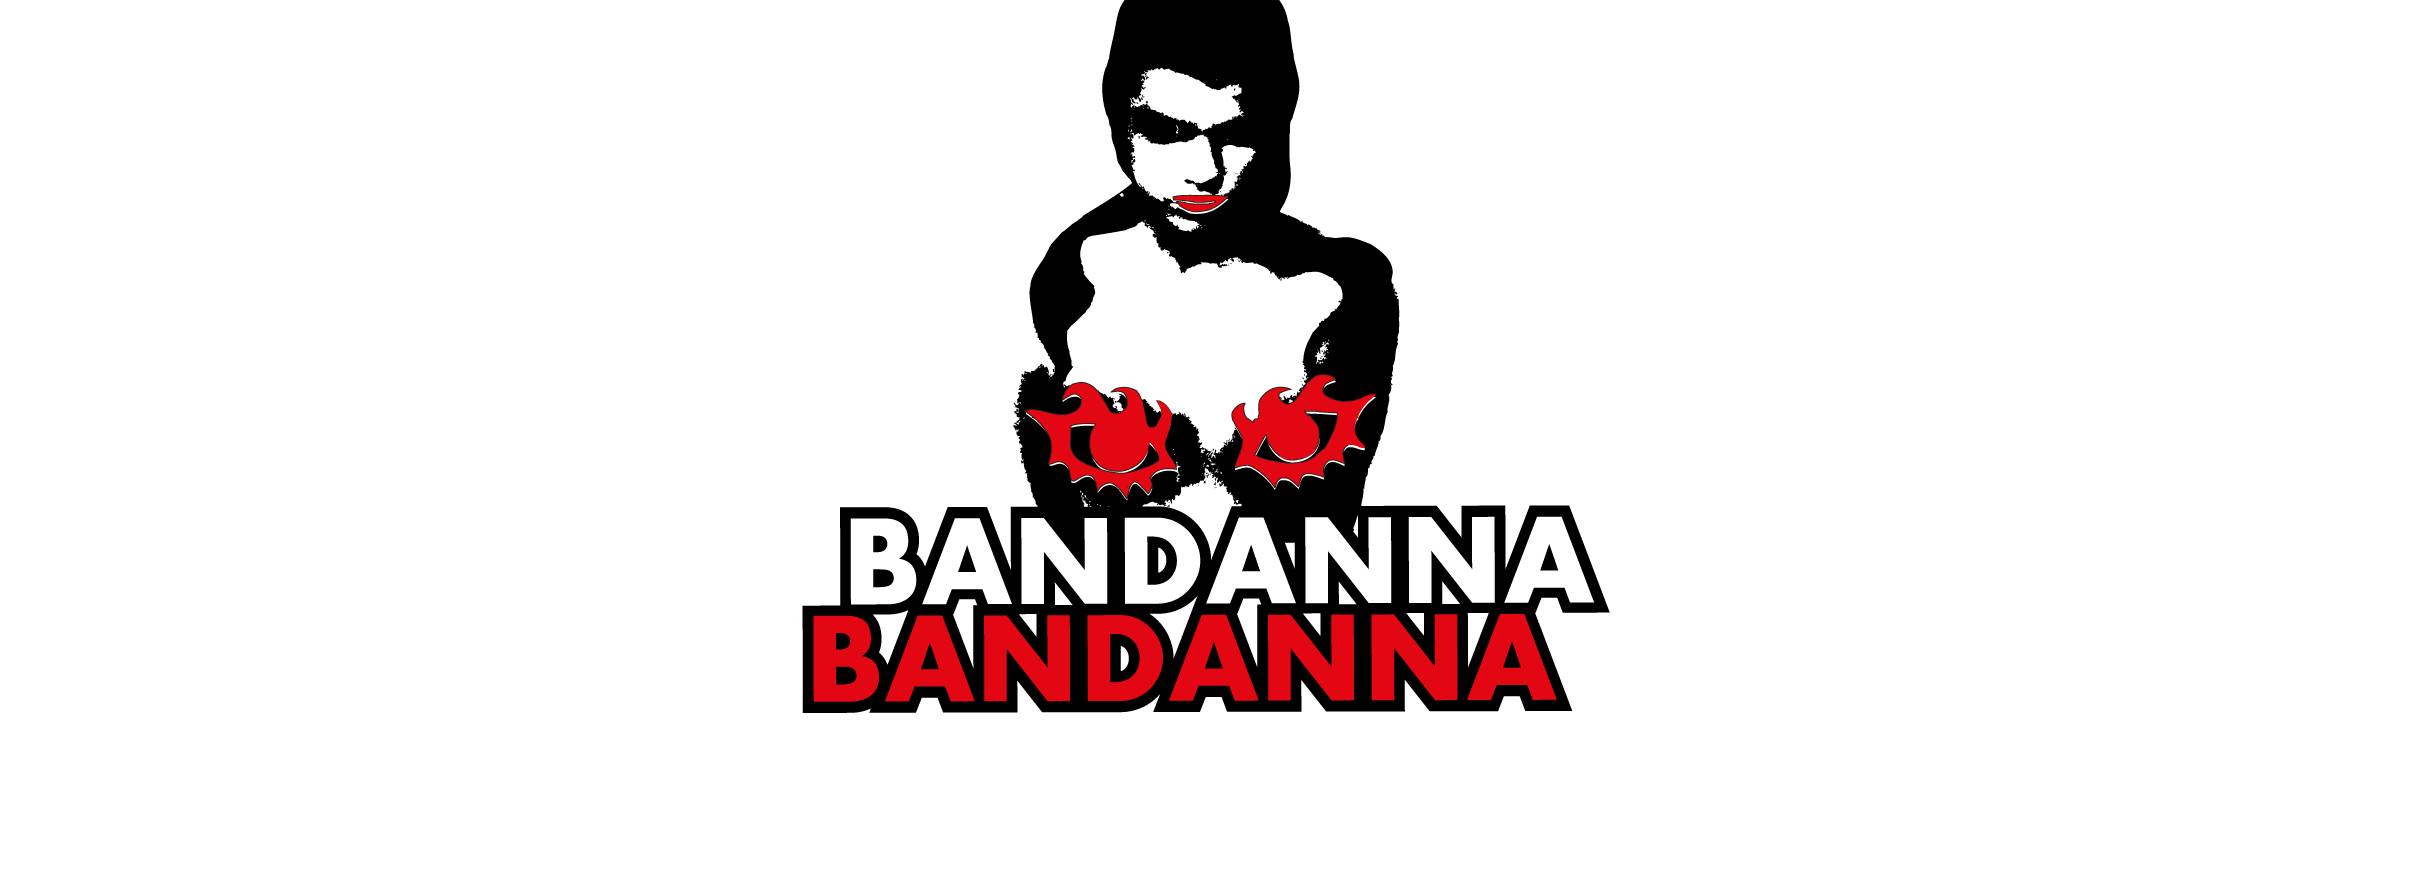 Bandanna-Bandana